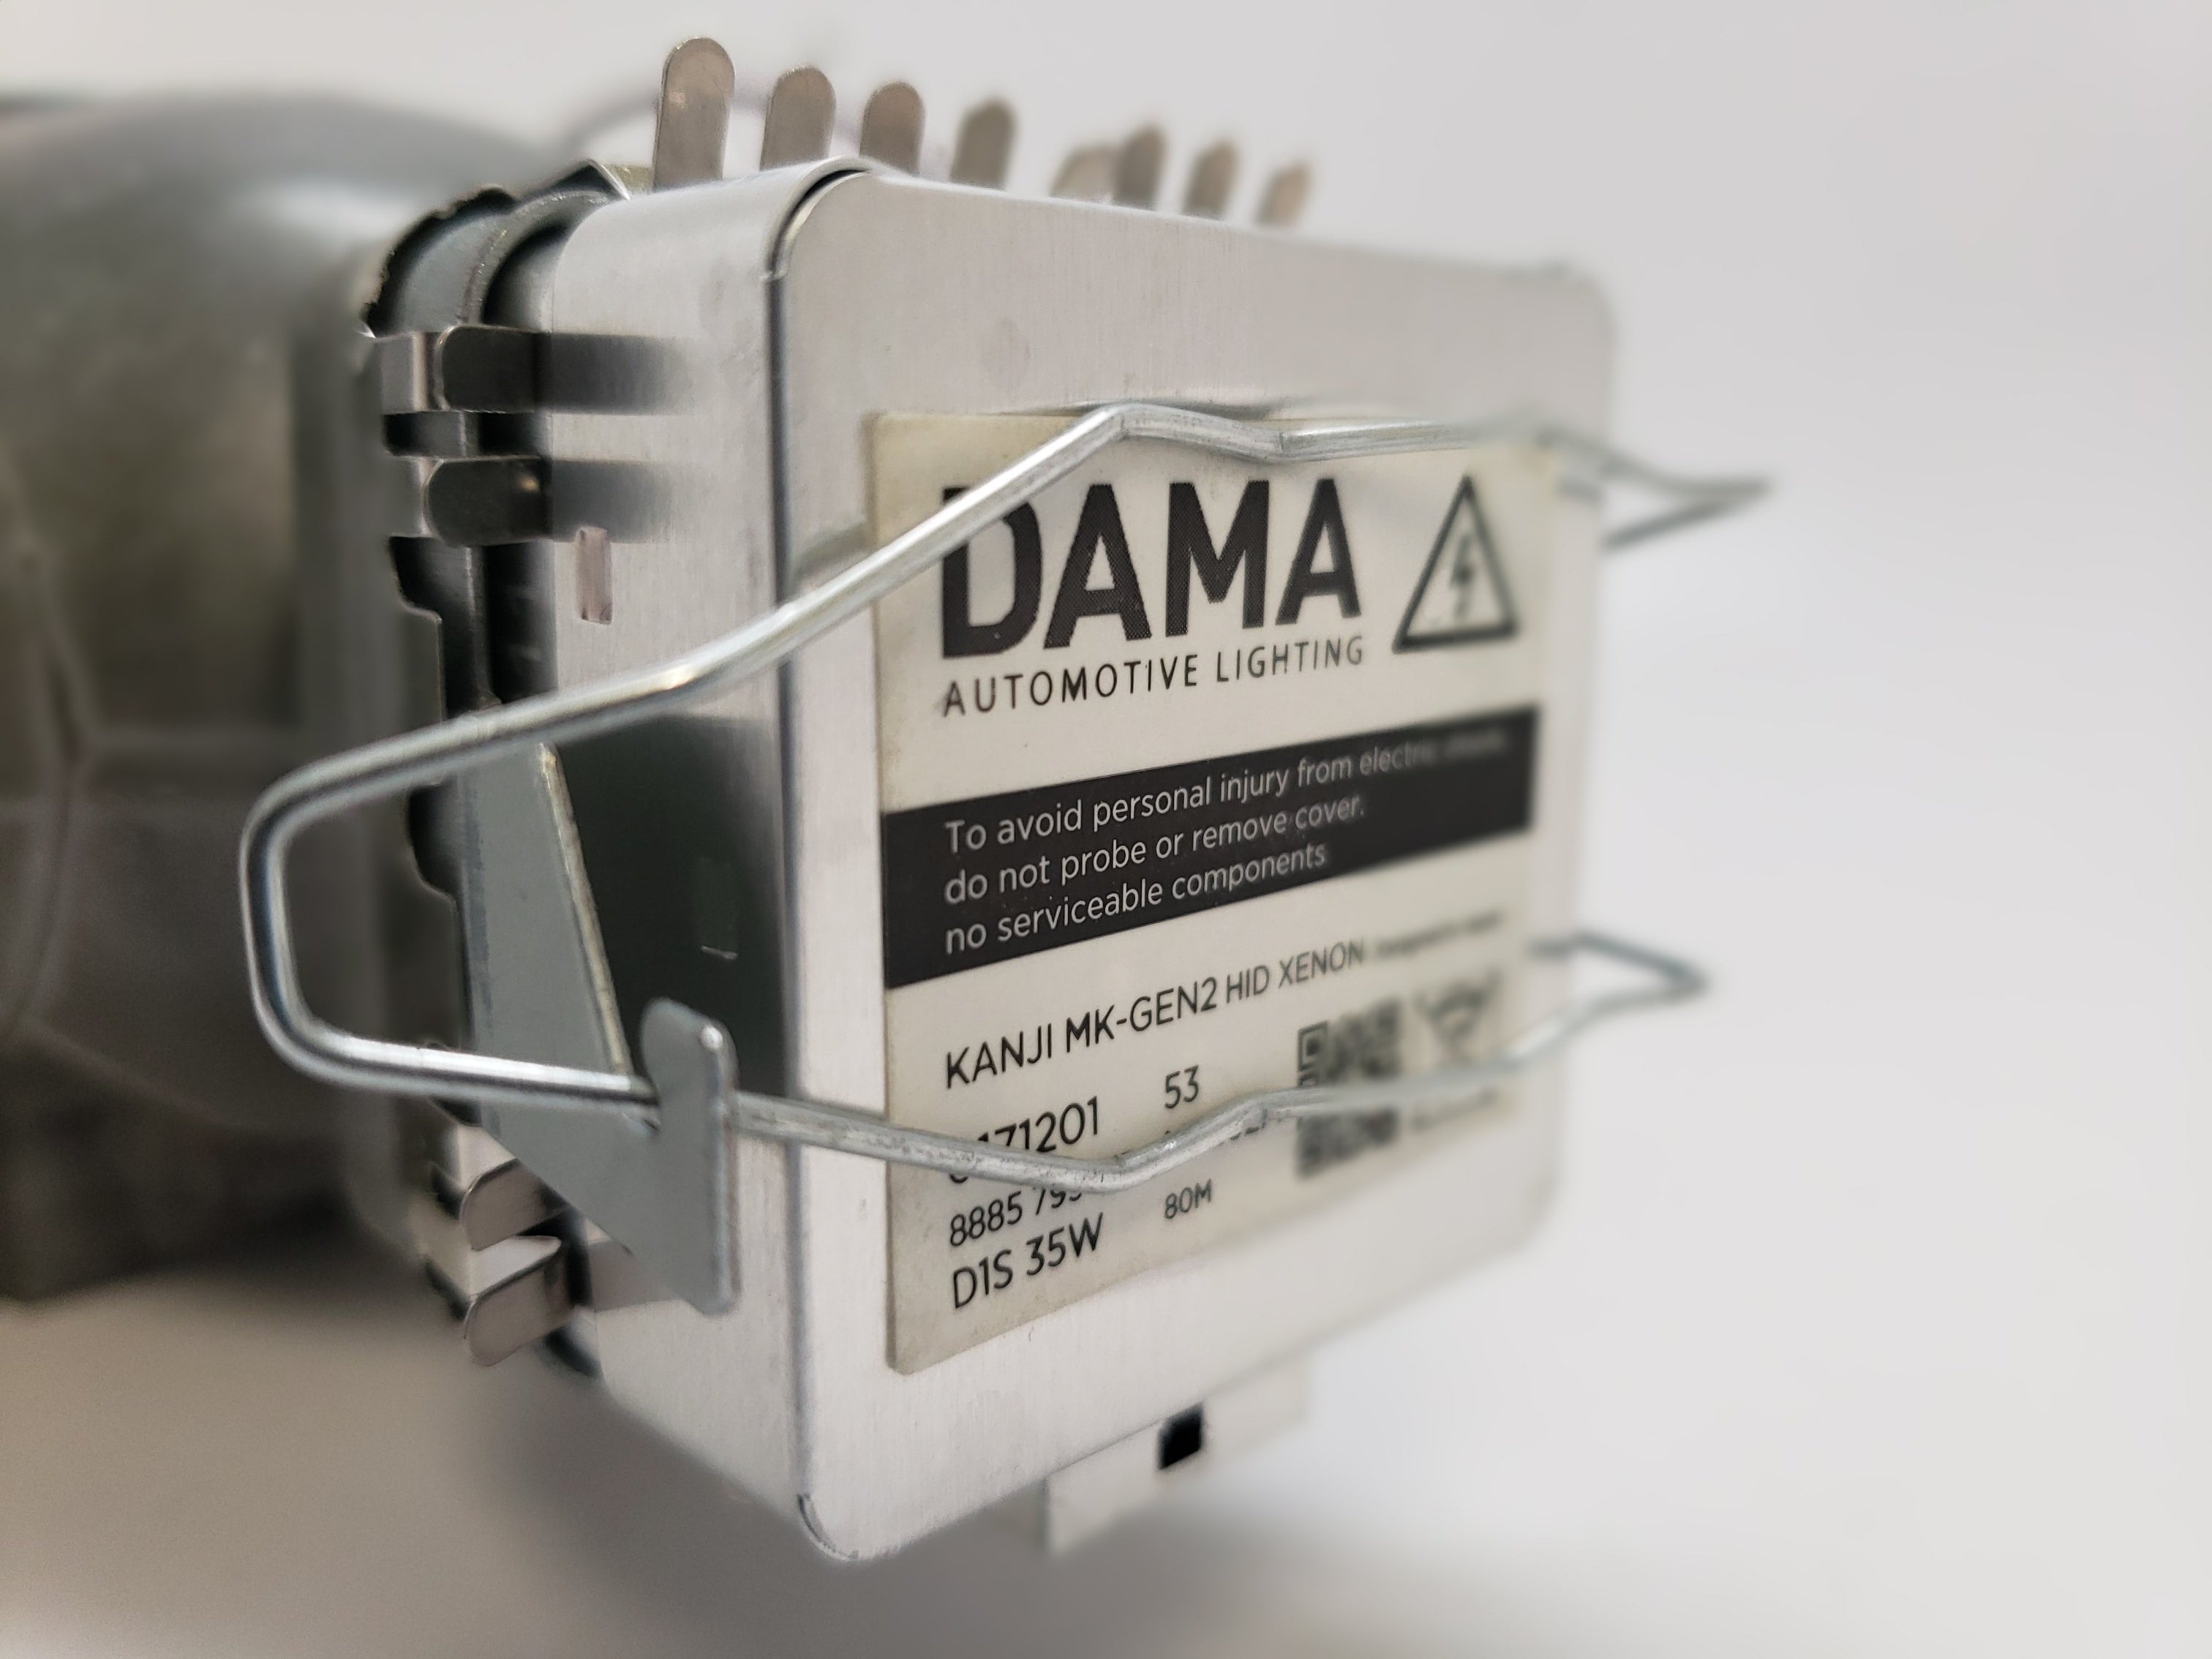 Kit De Conversion Dampoule LED D1S D3S D5S Installation Facile De